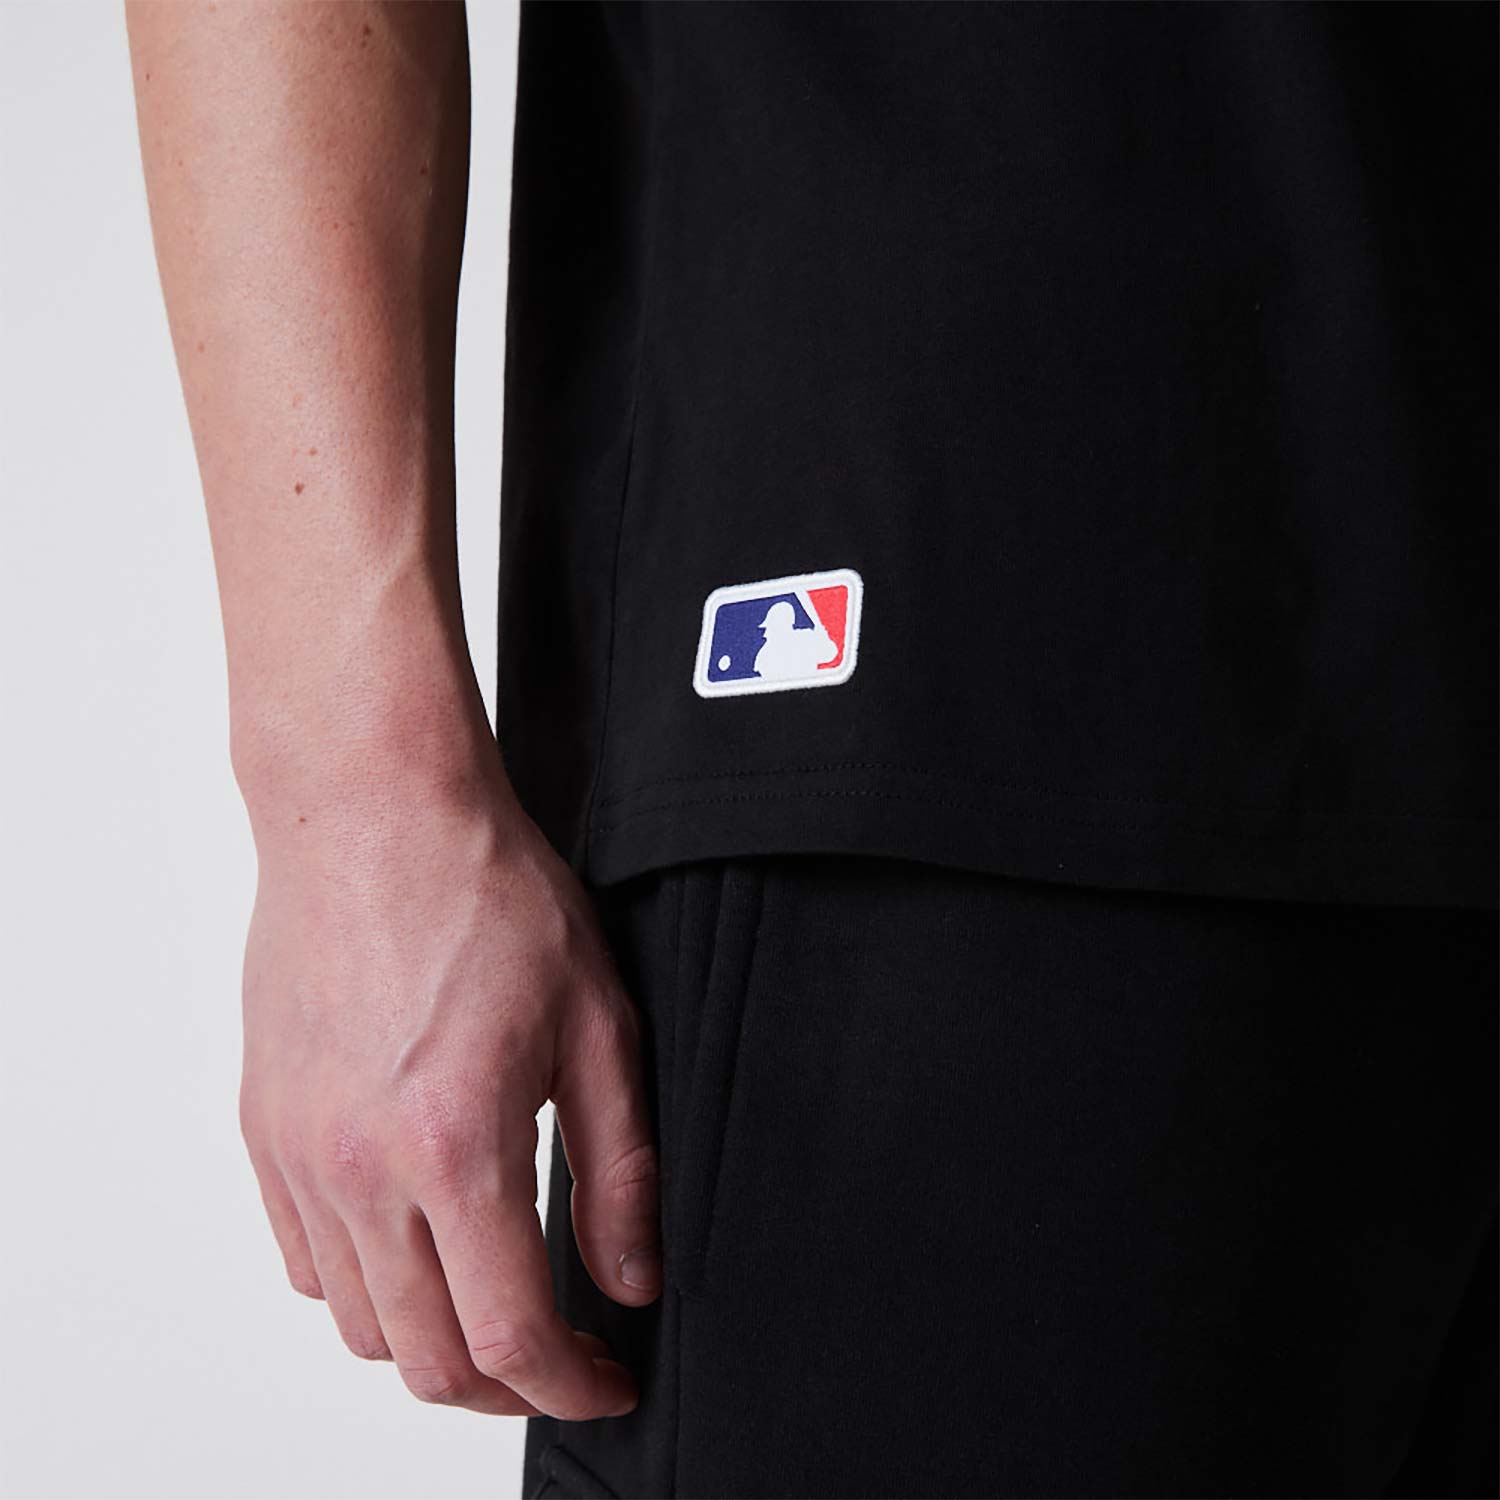 T-shirt Oversize LA Dodgers Essentials Noir